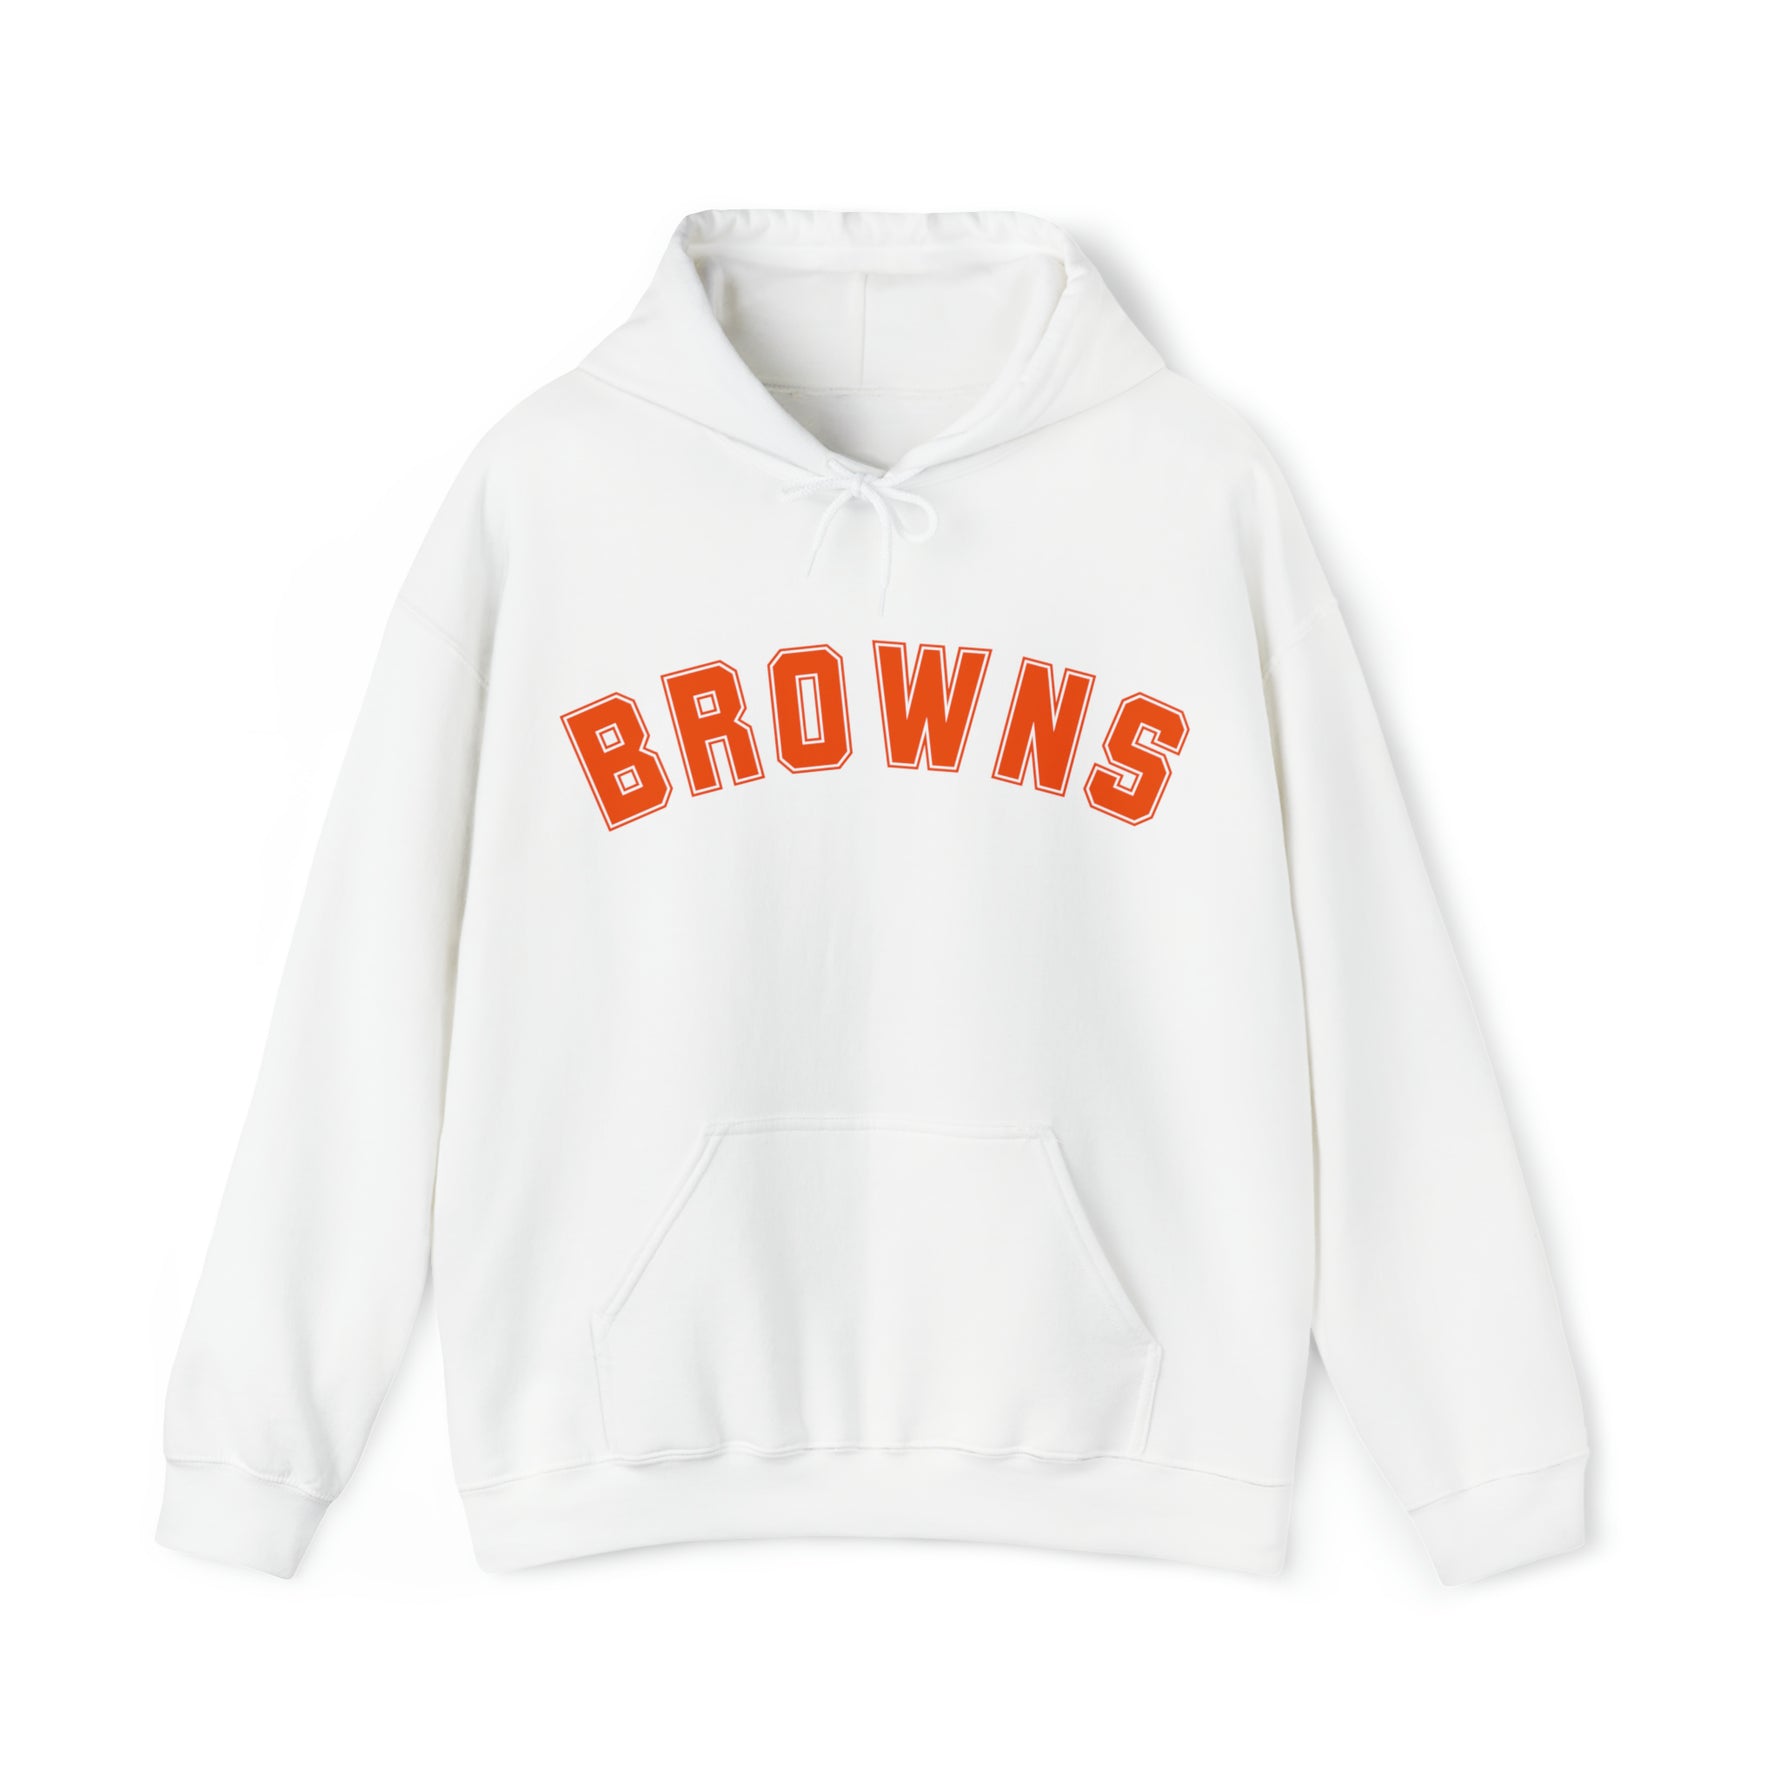 Retro Cleveland Browns Sweatshirt - Home Field Fan